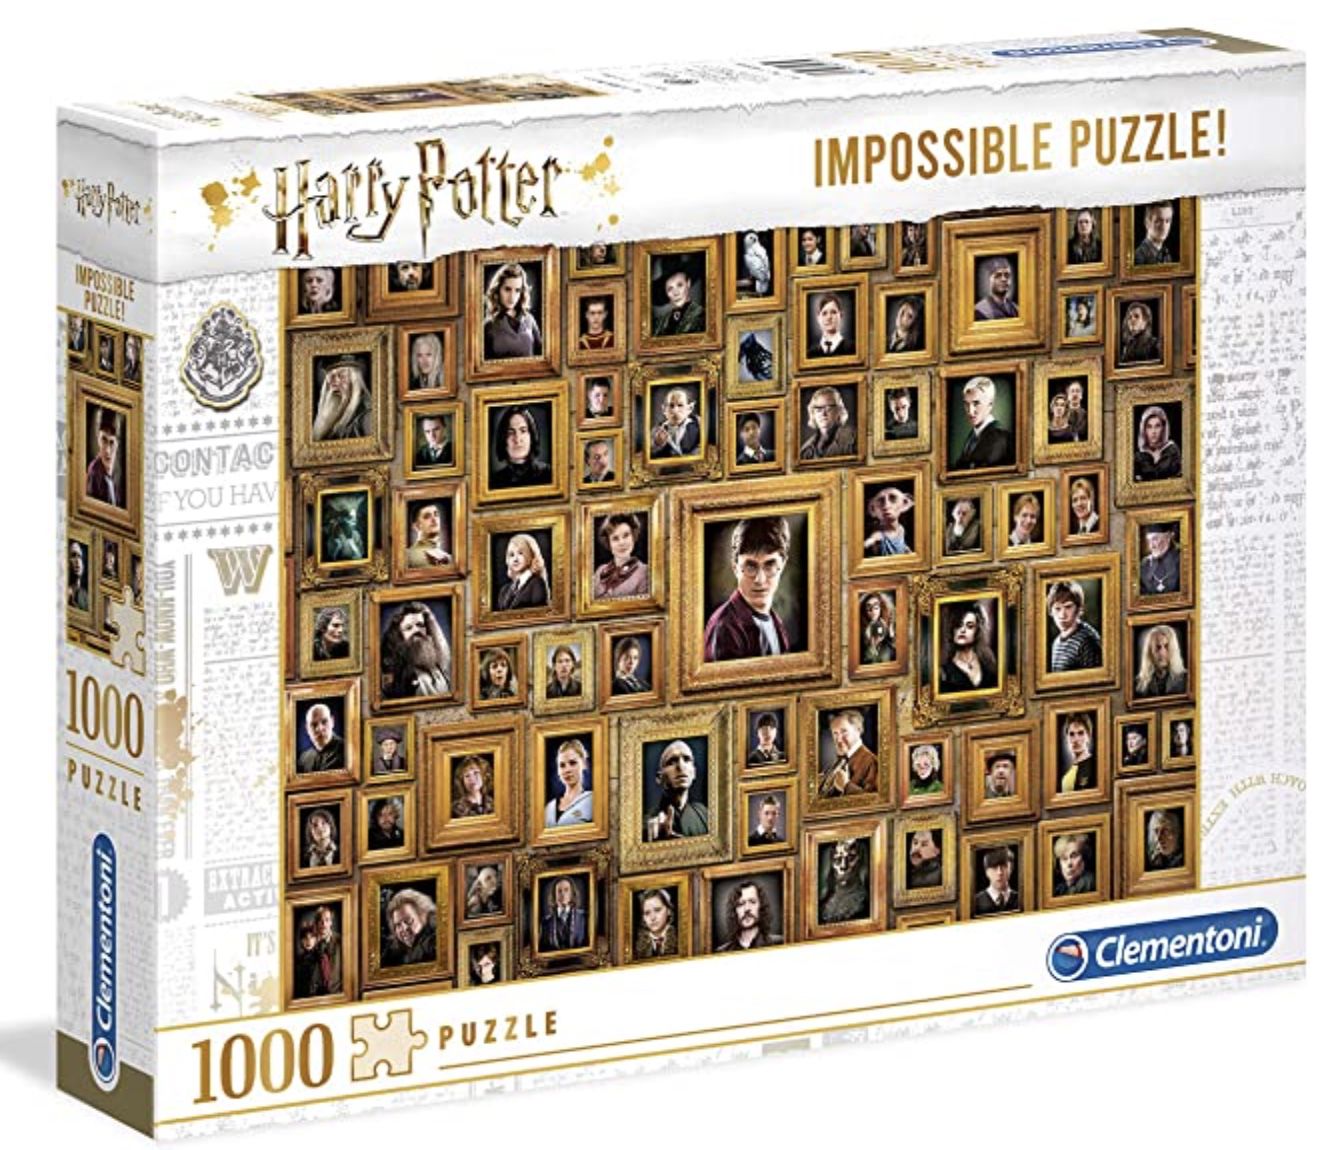 Clementoni 61881 Impossible Puzzle Harry Potter mit 1.000 Teilen für 8,59€ (statt 15€) &#8211; Prime